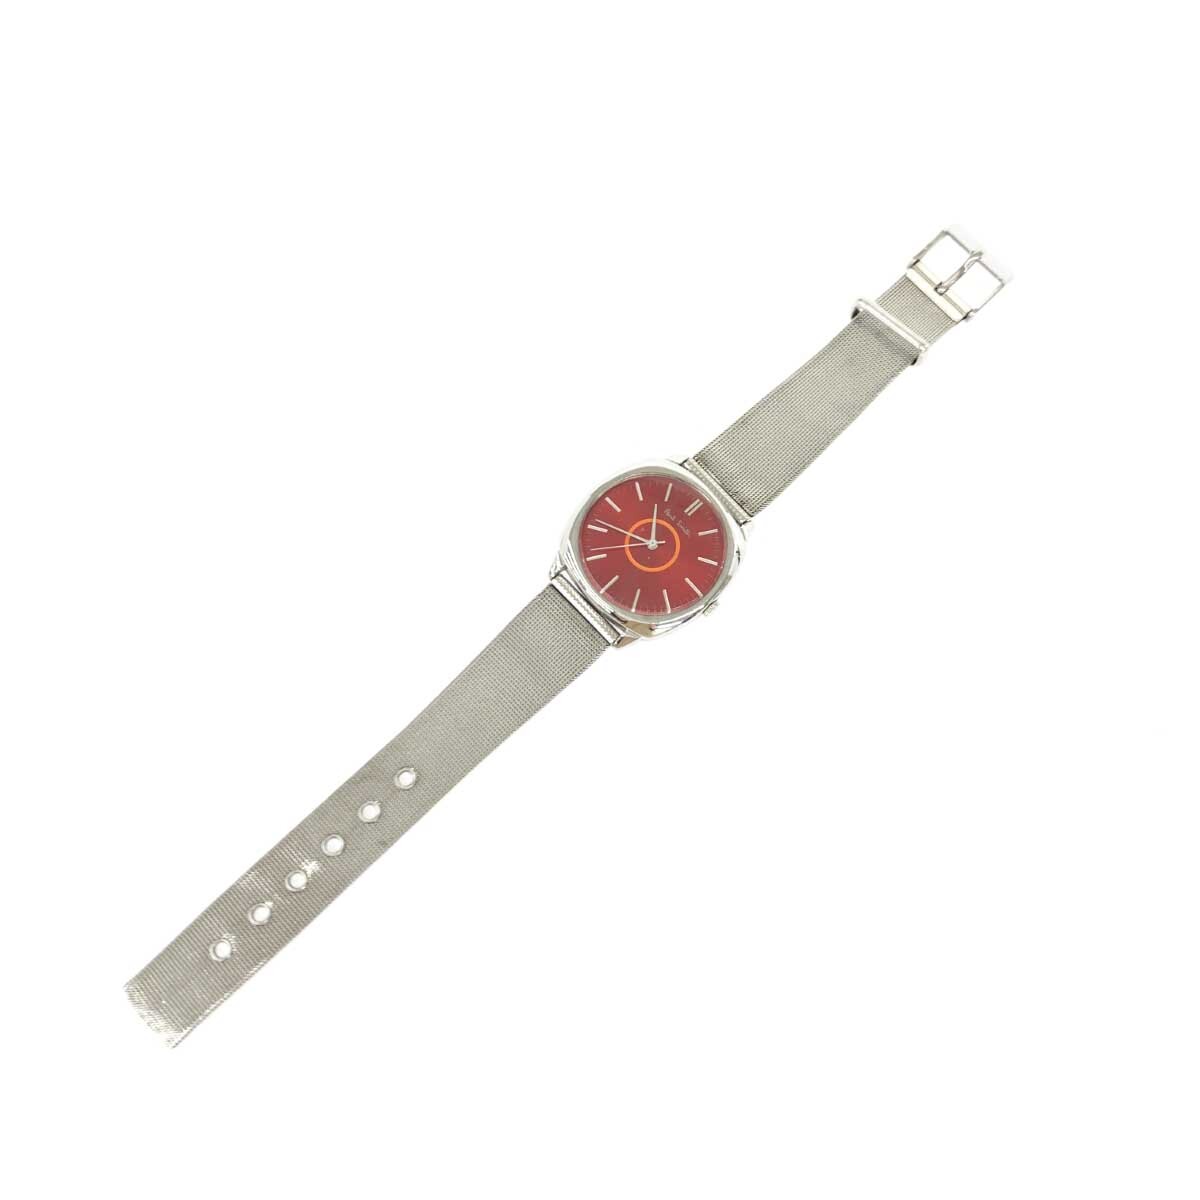 ◆Paul Smith collection ポールスミス コレクション 腕時計 クォーツ◆5530-F52258 シルバーカラー SS レディース ウォッチ watch_画像7